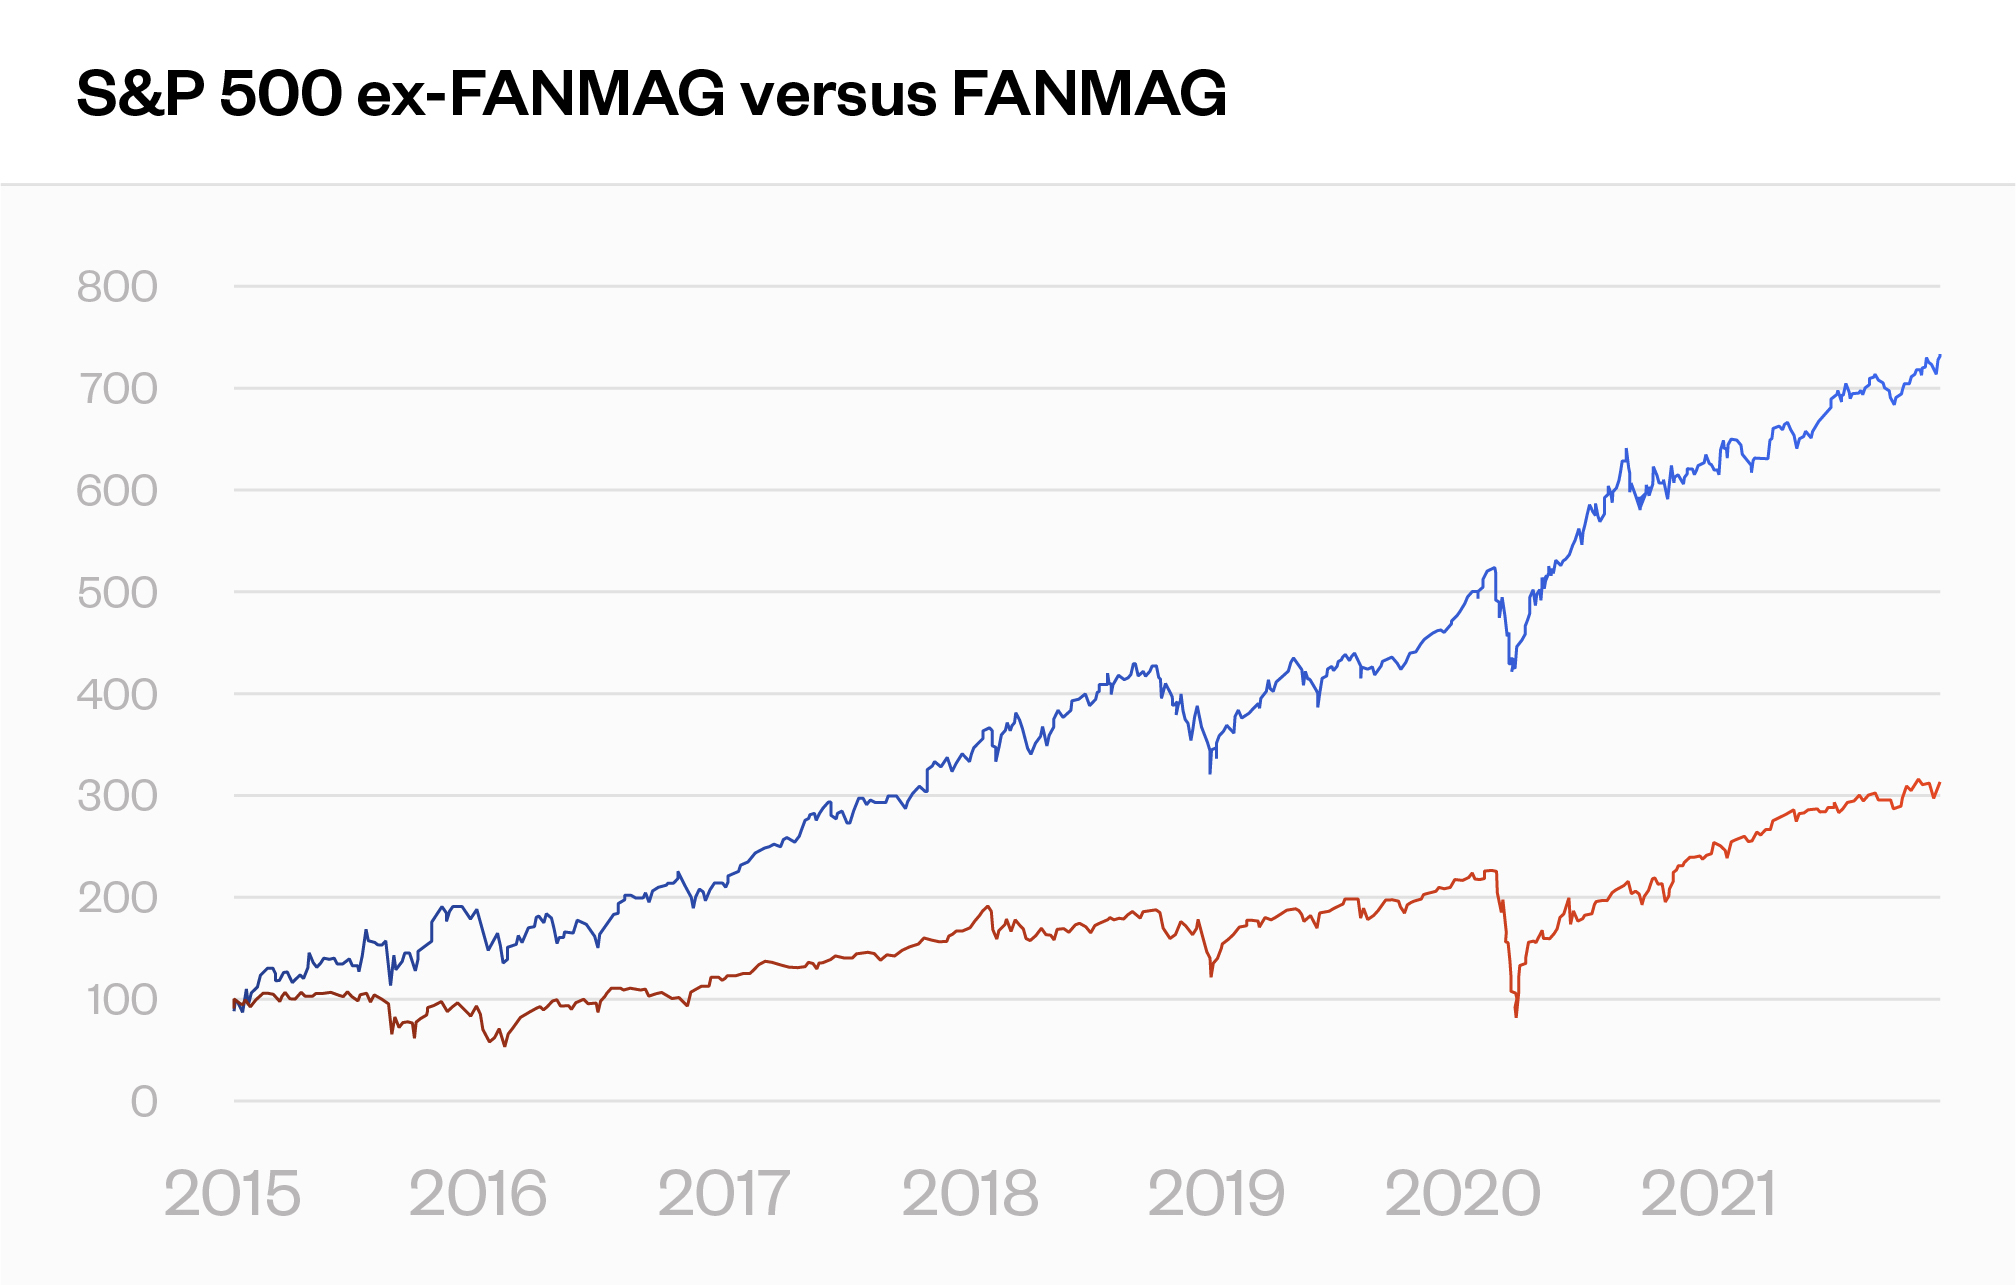 S&P 500 ex-FANMAG versus FANMAG